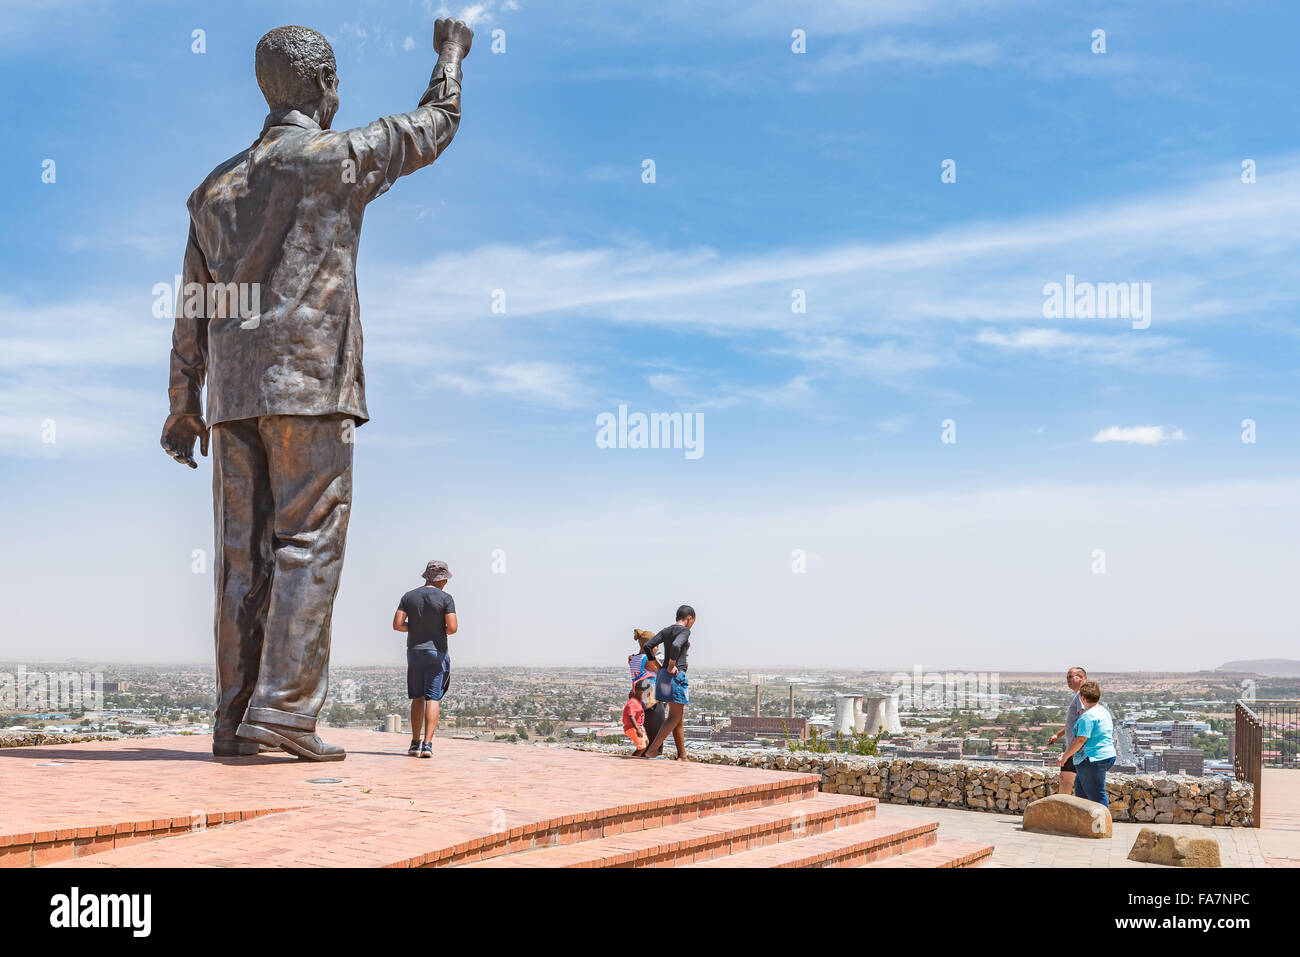 BLOEMFONTEIN, SUD AFRICA, dicembre 21, 2015: 6,5 m la statua di bronzo di Nelson Mandela sulla collina navale di Bloemfontein. Waaihoek, Foto Stock